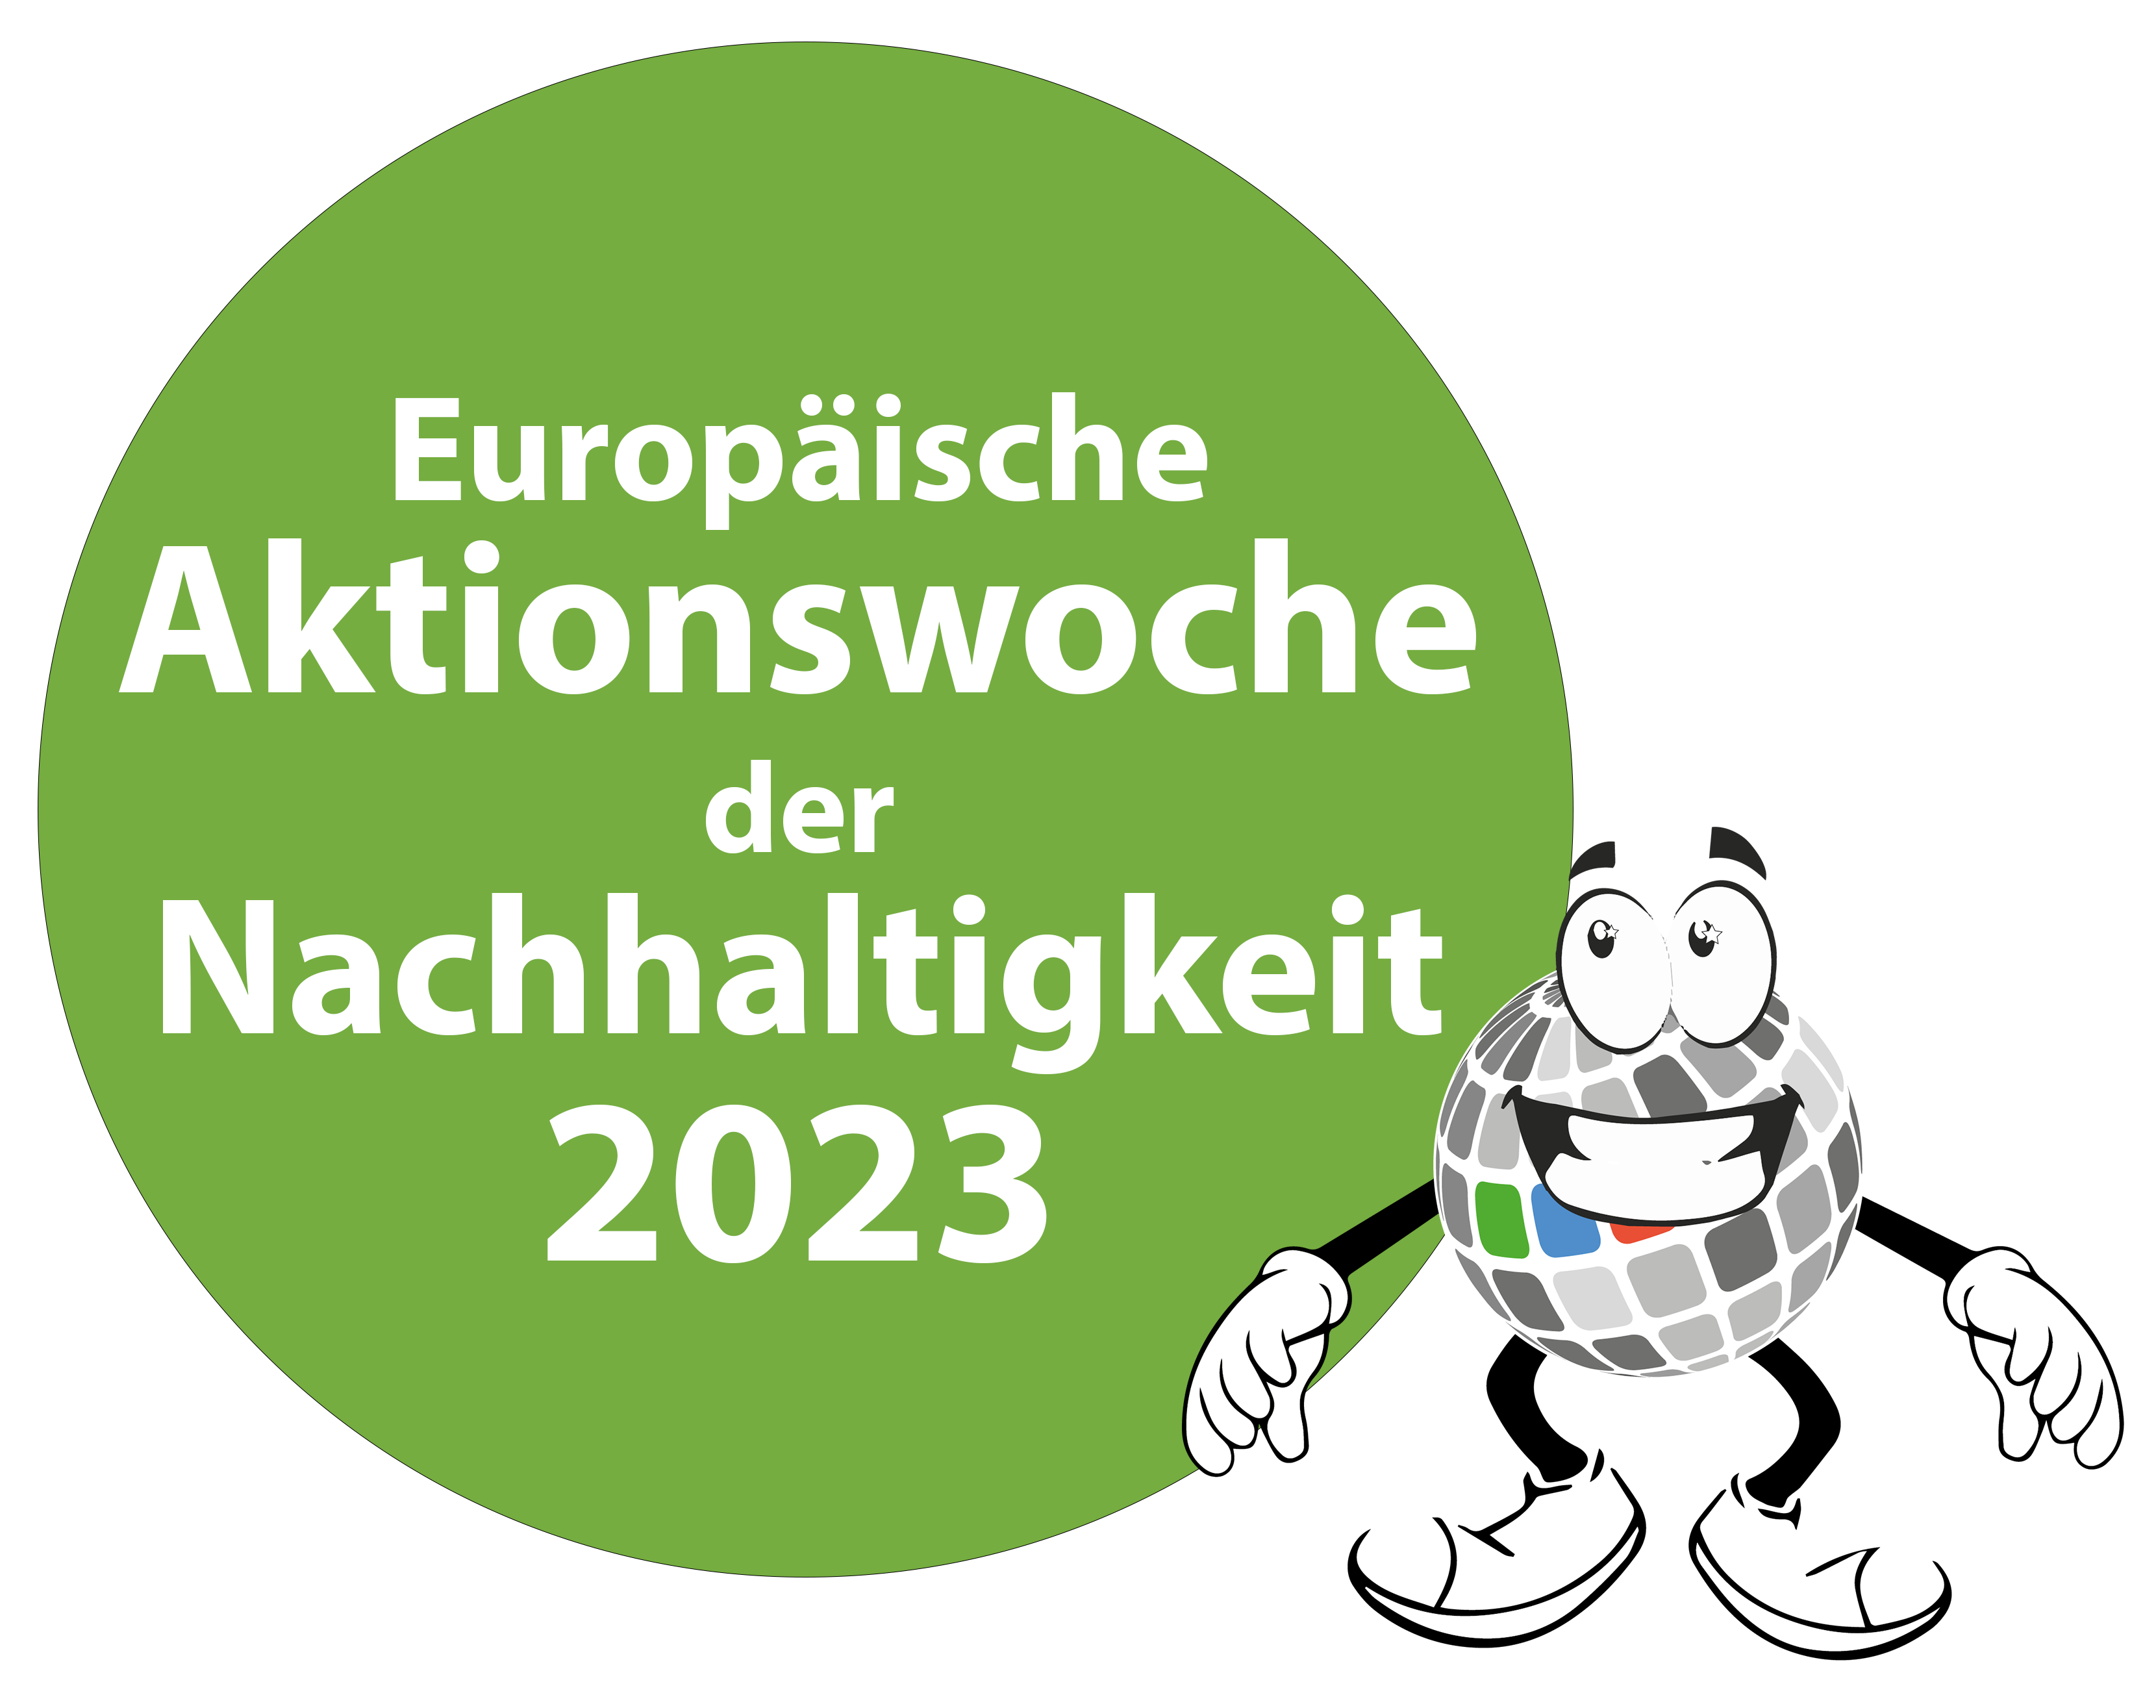 Europäische Aktionstage Nachhaltigkeit 2023